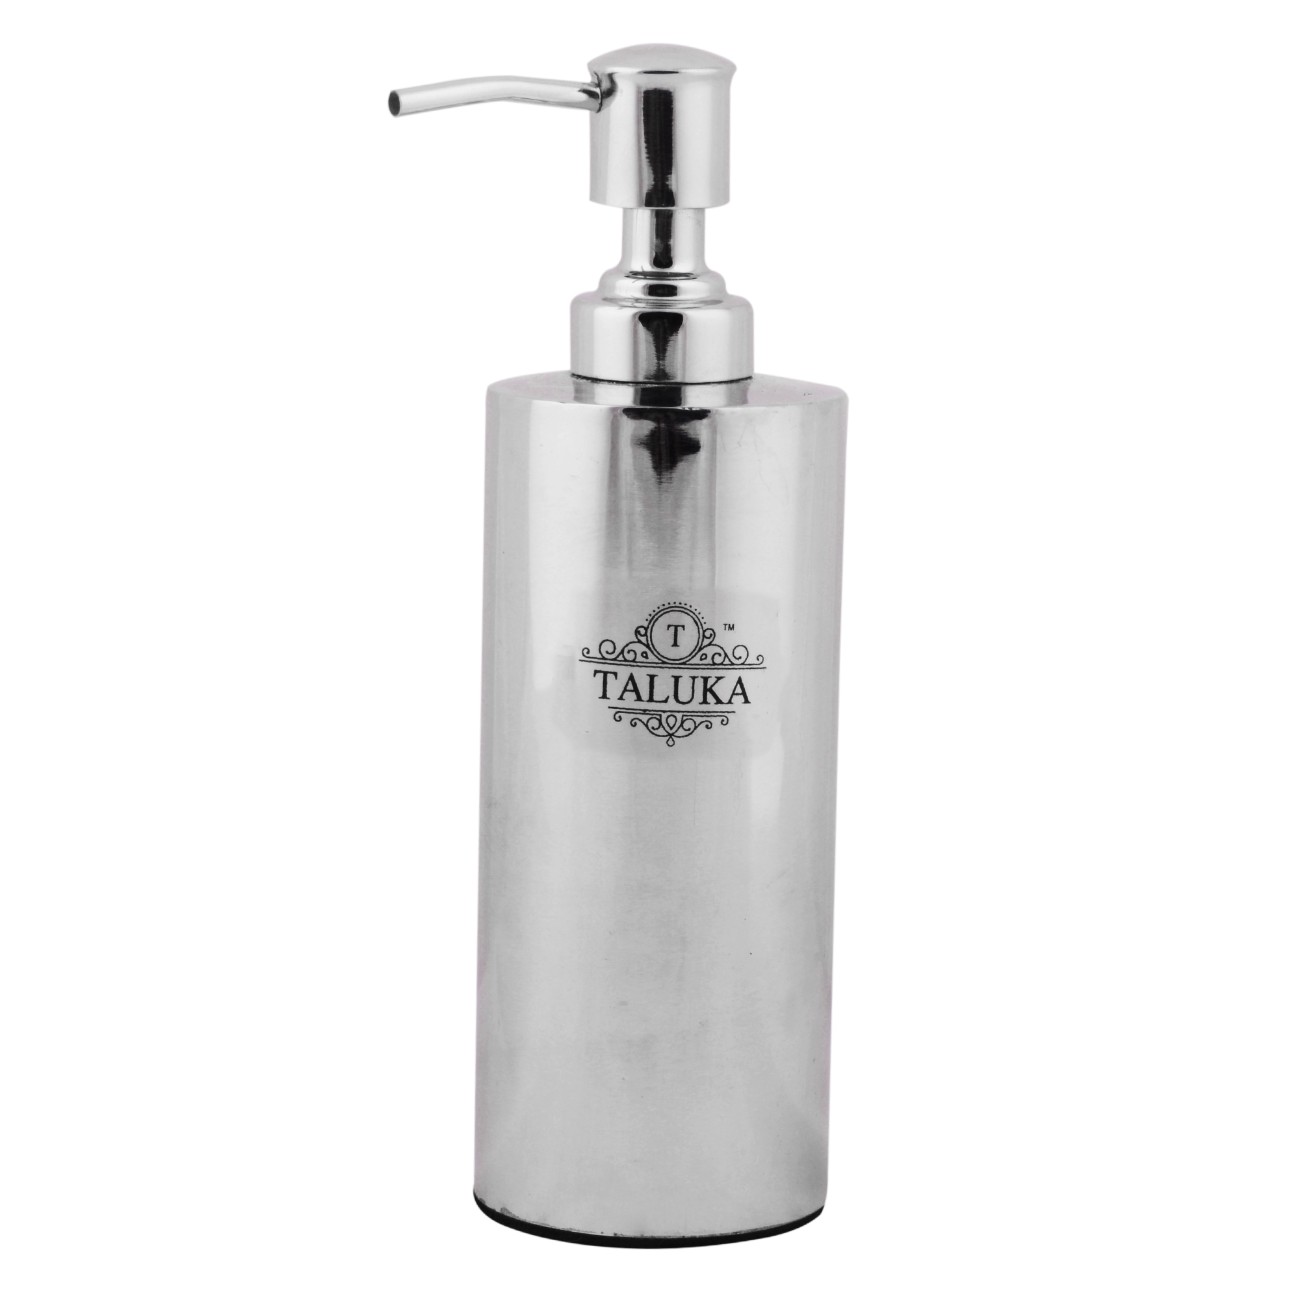 Stainless Steel Round Soap Dispenser Luxury Bathroom Accessories Bath Set